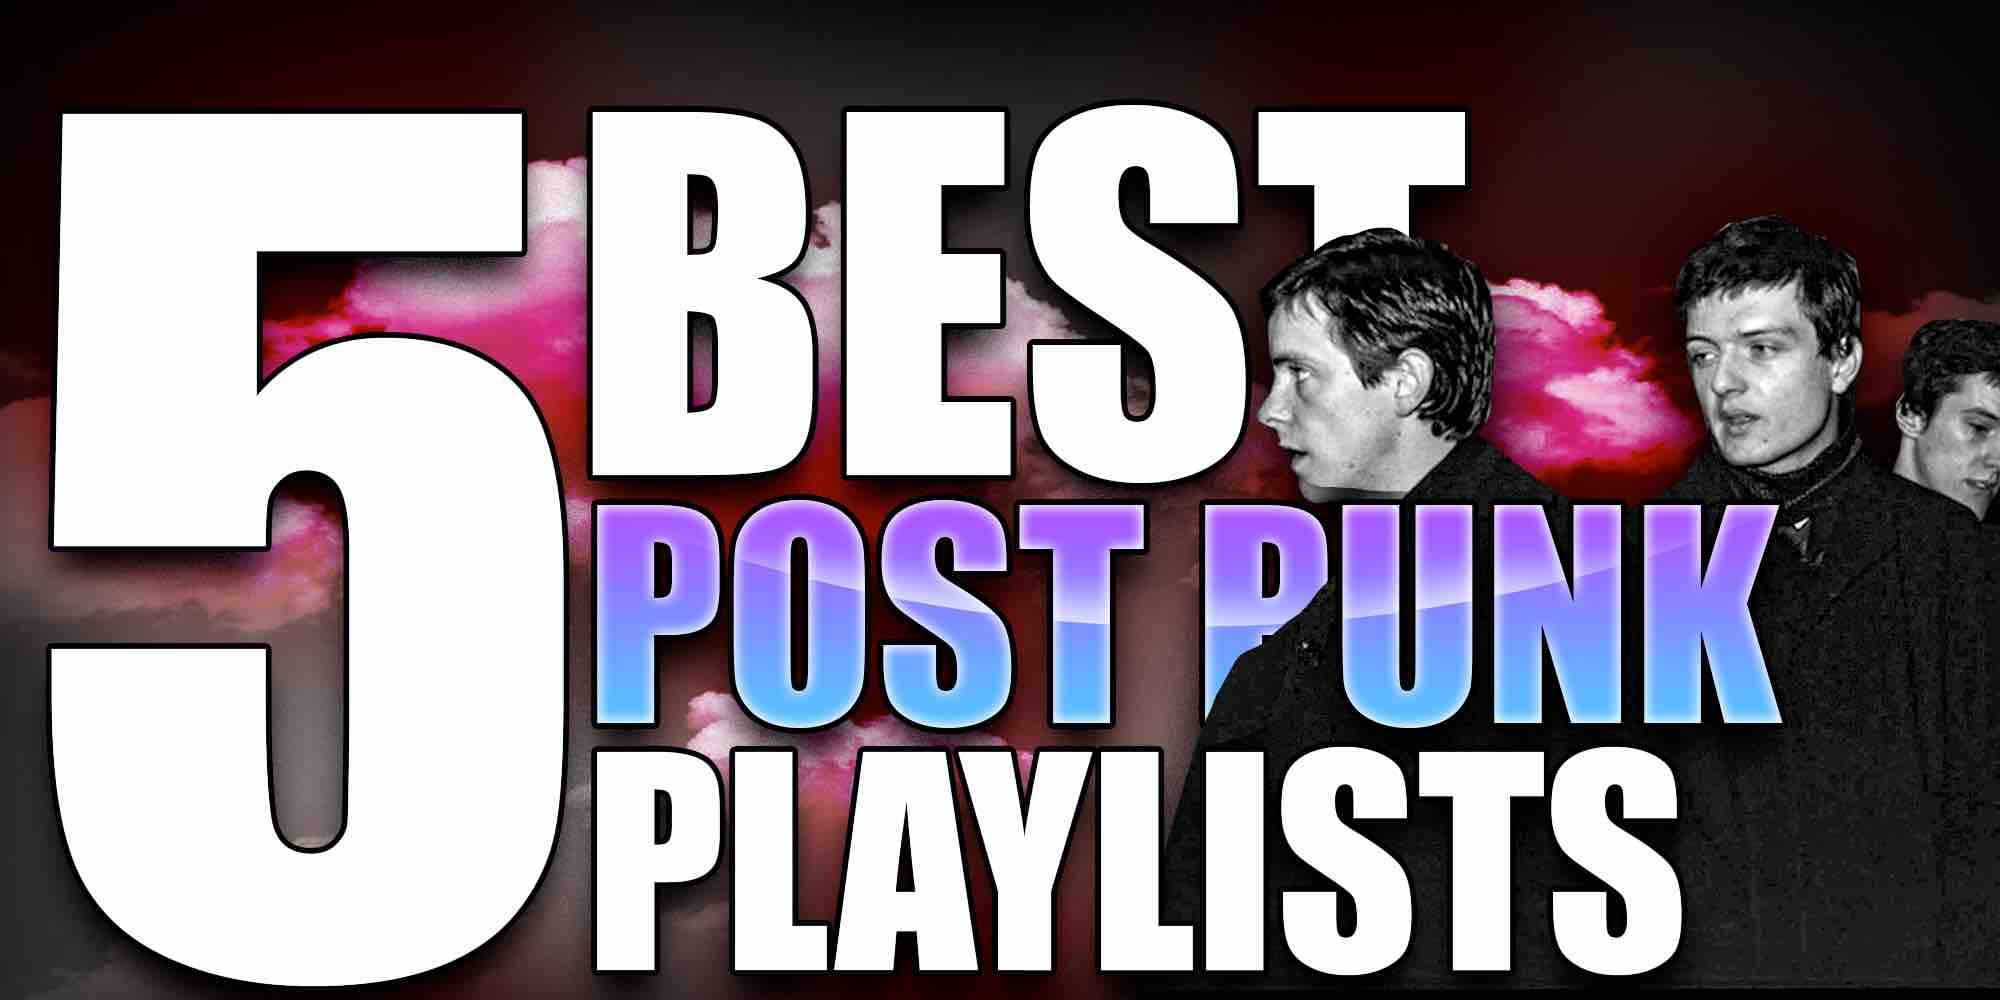 5 best post punk playlists